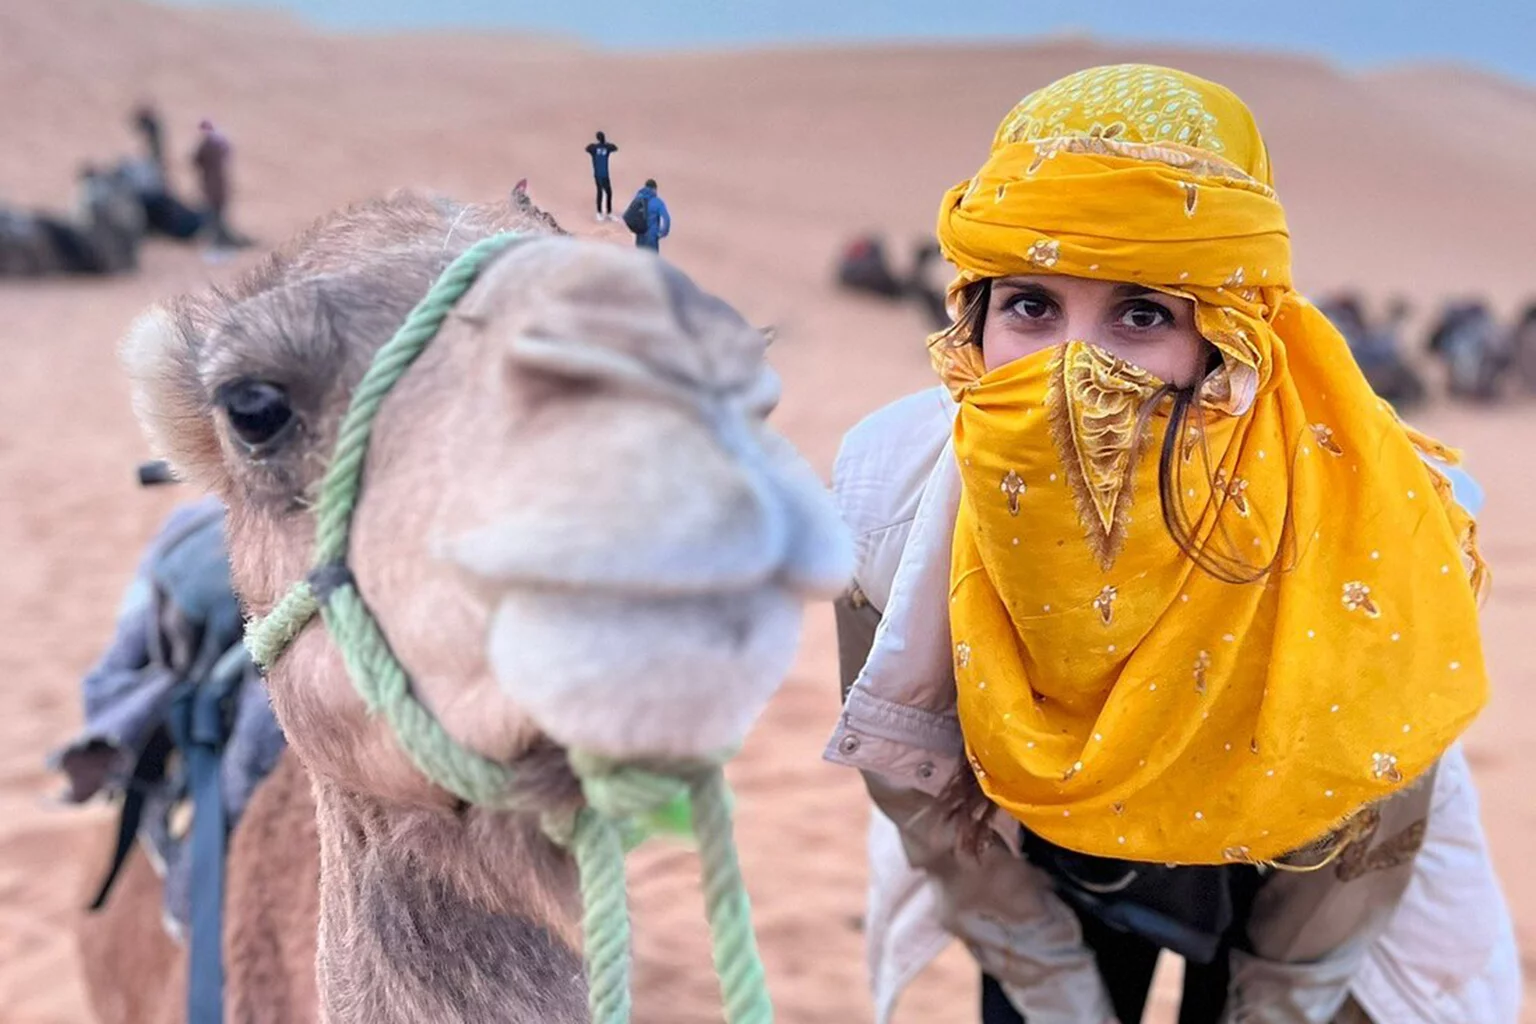 Morocco Camel trekking in the sahara desert - Sahara desert activities - the white camp